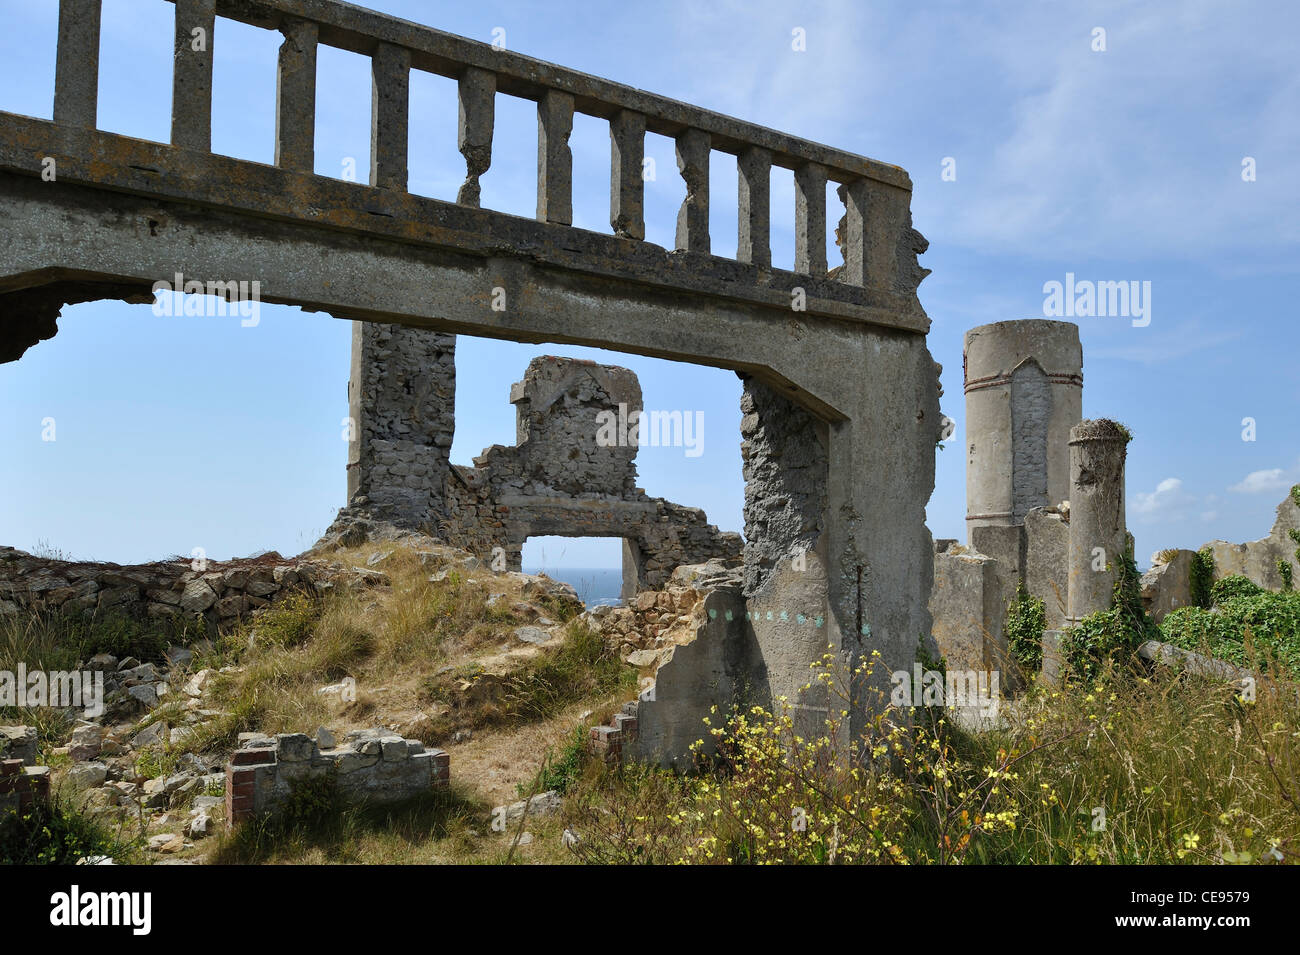 Ruines du Manoir de Coecilian du poète Saint-Pol-Roux / Roux Paul-Pierre à Camaret-sur-Mer, Bretagne, France Banque D'Images